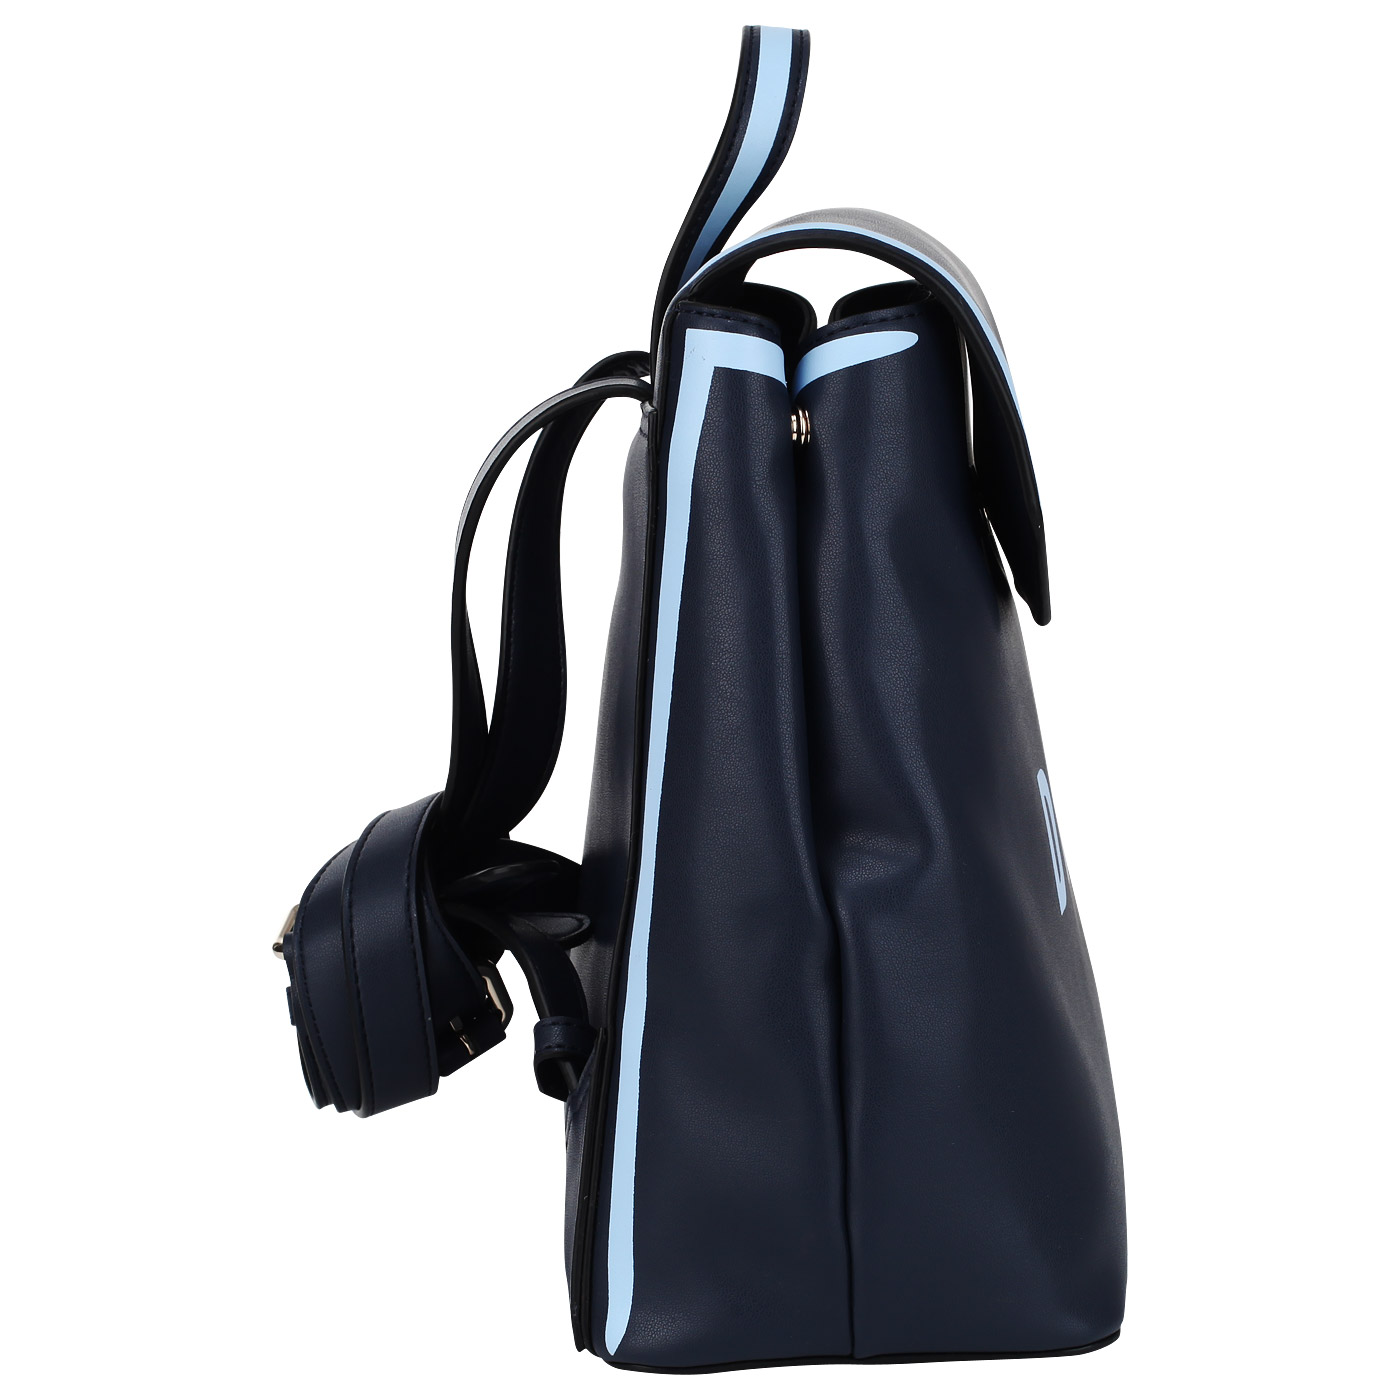 Рюкзак с откидным клапаном DKNY Jade